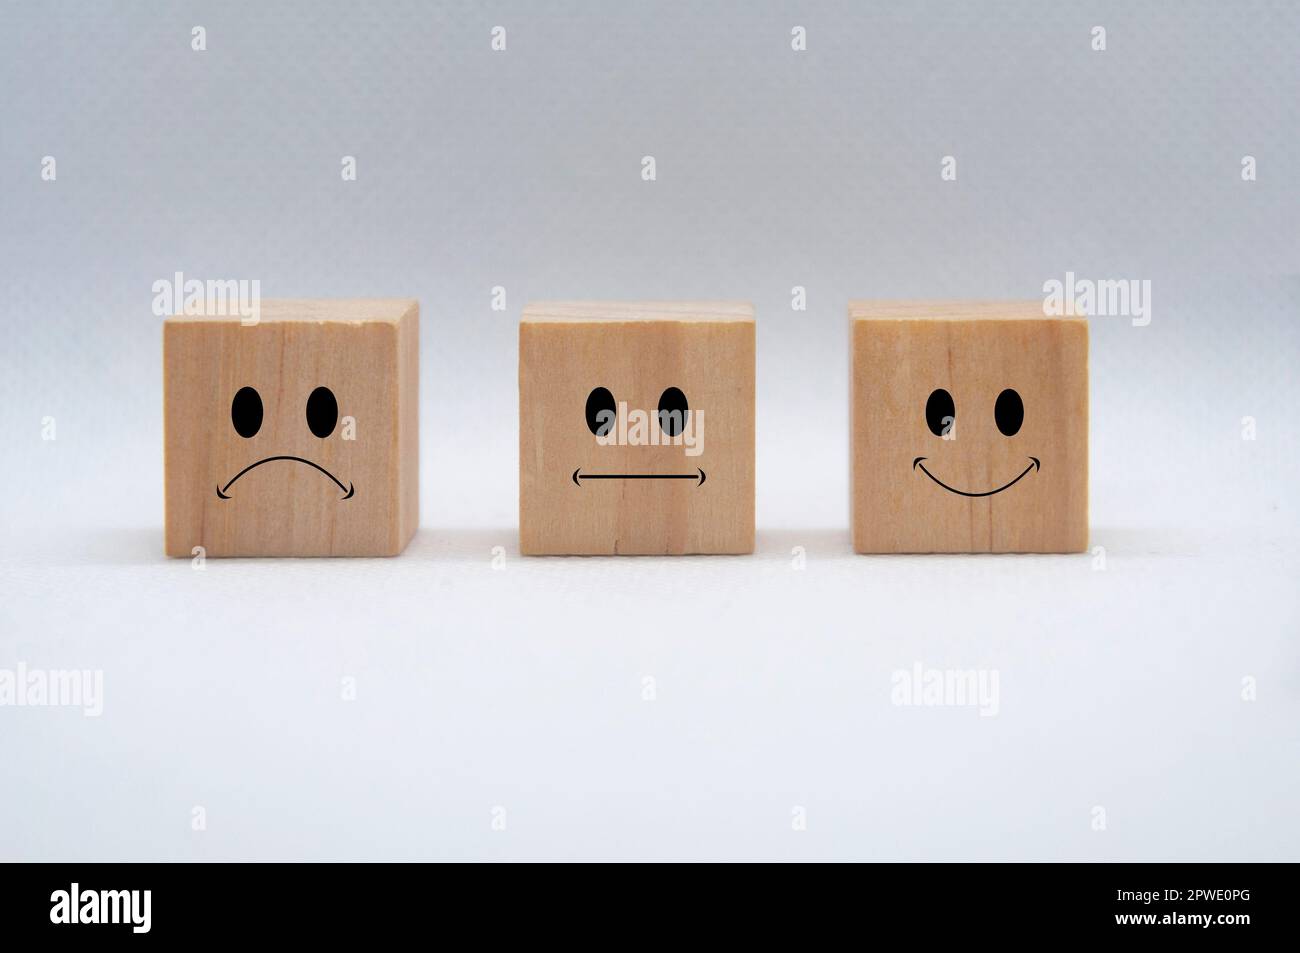 Faccine emoticon tristi, neutrali e felici su cubetti di legno con copertura di fondo bianca. Feedback dei clienti, soddisfazione e valutazione. Foto Stock